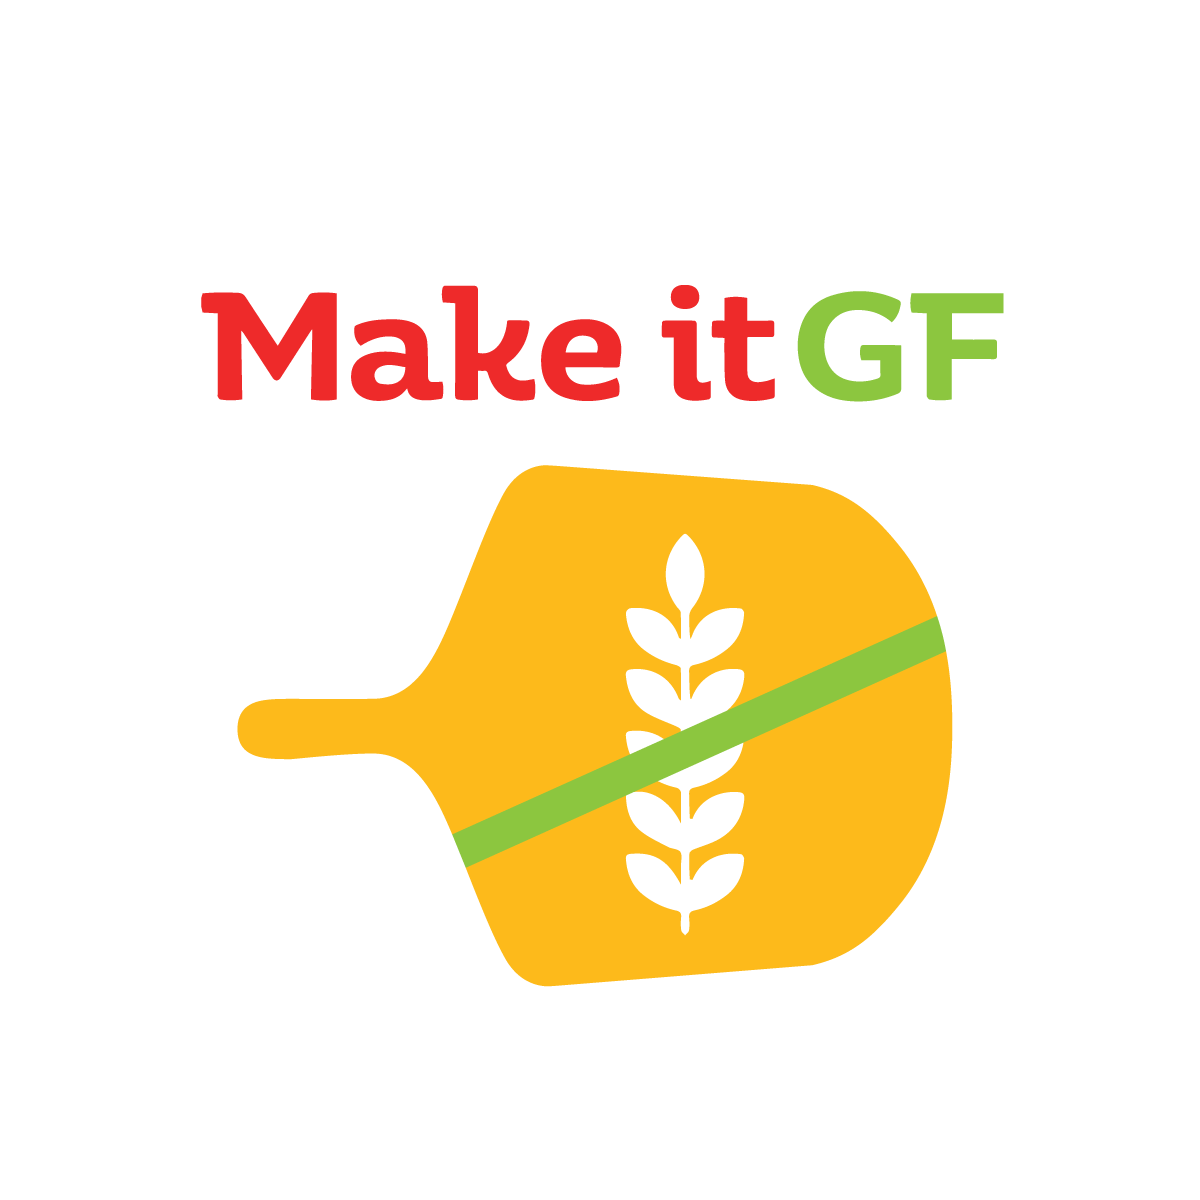 Make it GF - Gluten free